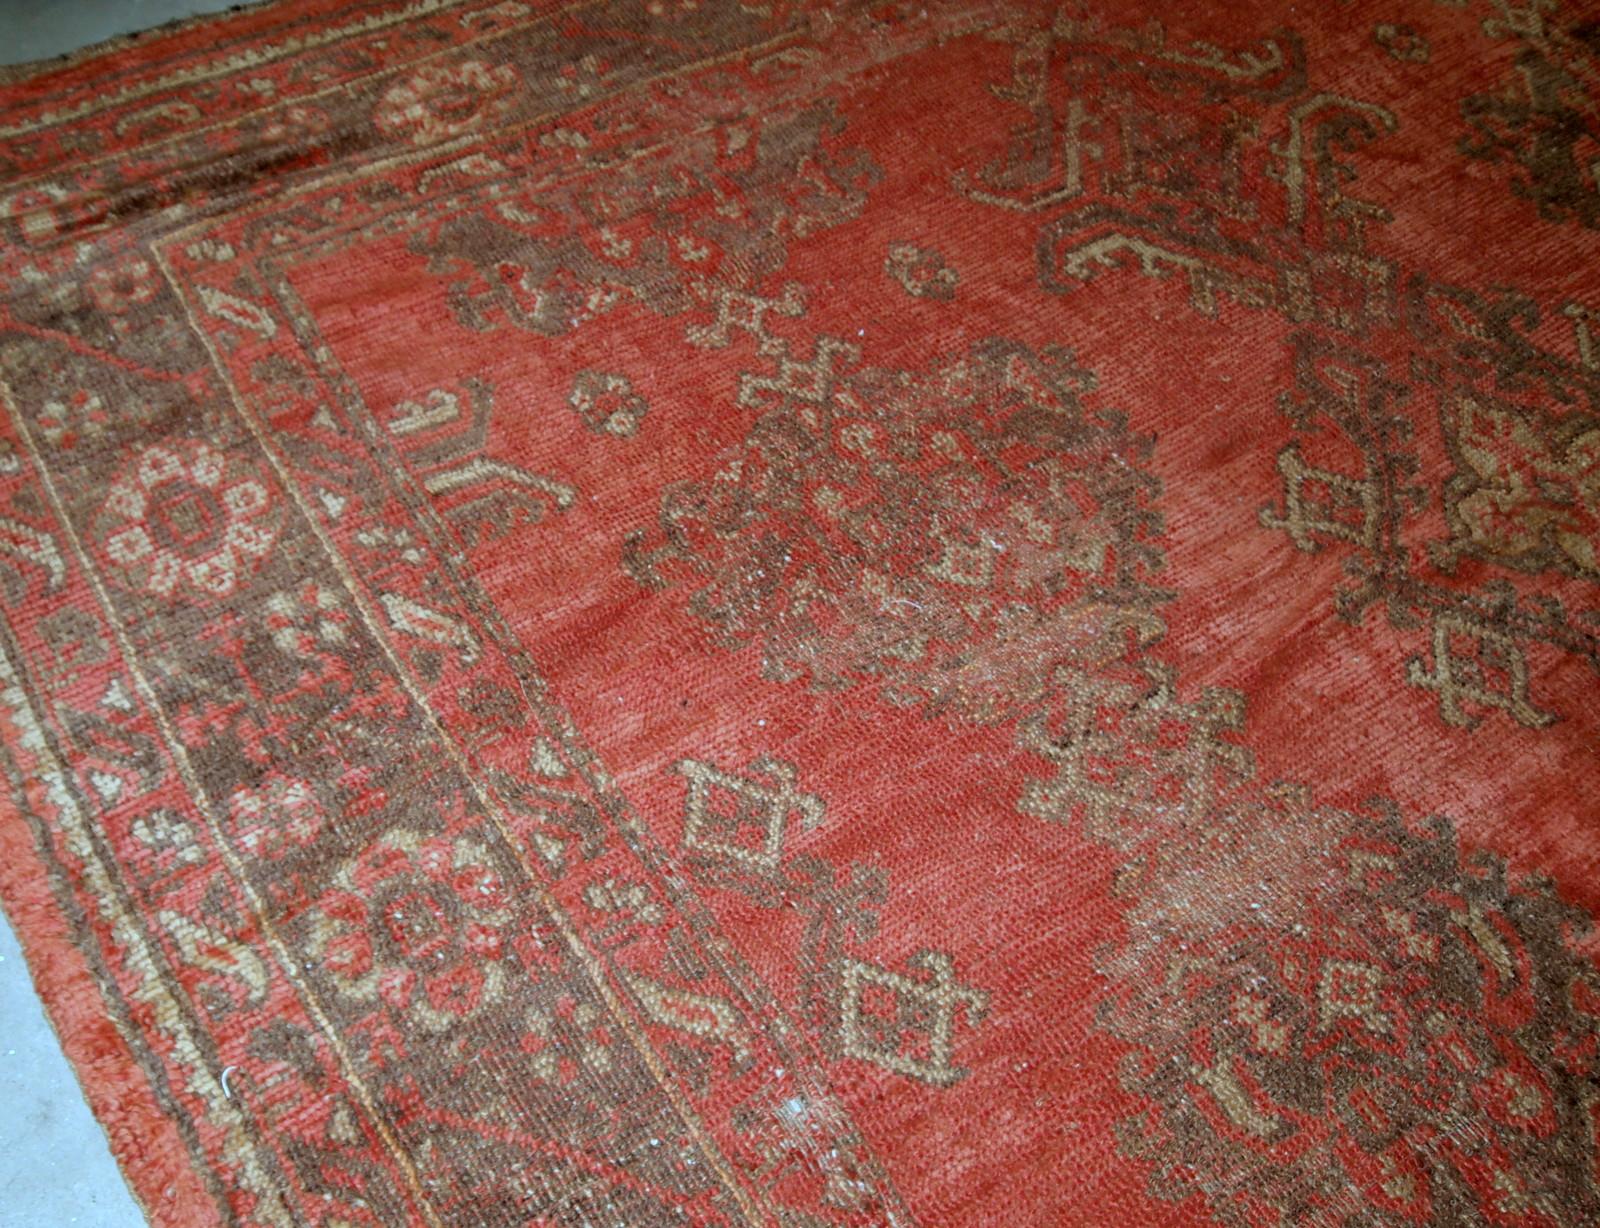 Tapis turc ancien fait à la main de couleur orange. Le tapis est du début du 20ème siècle en état original, il a quelques signes d'âge.

-état : original, quelques signes d'âge,

-circa : 1900s,

-taille : 9' x 11' (274cm x 335cm),

-matériau :